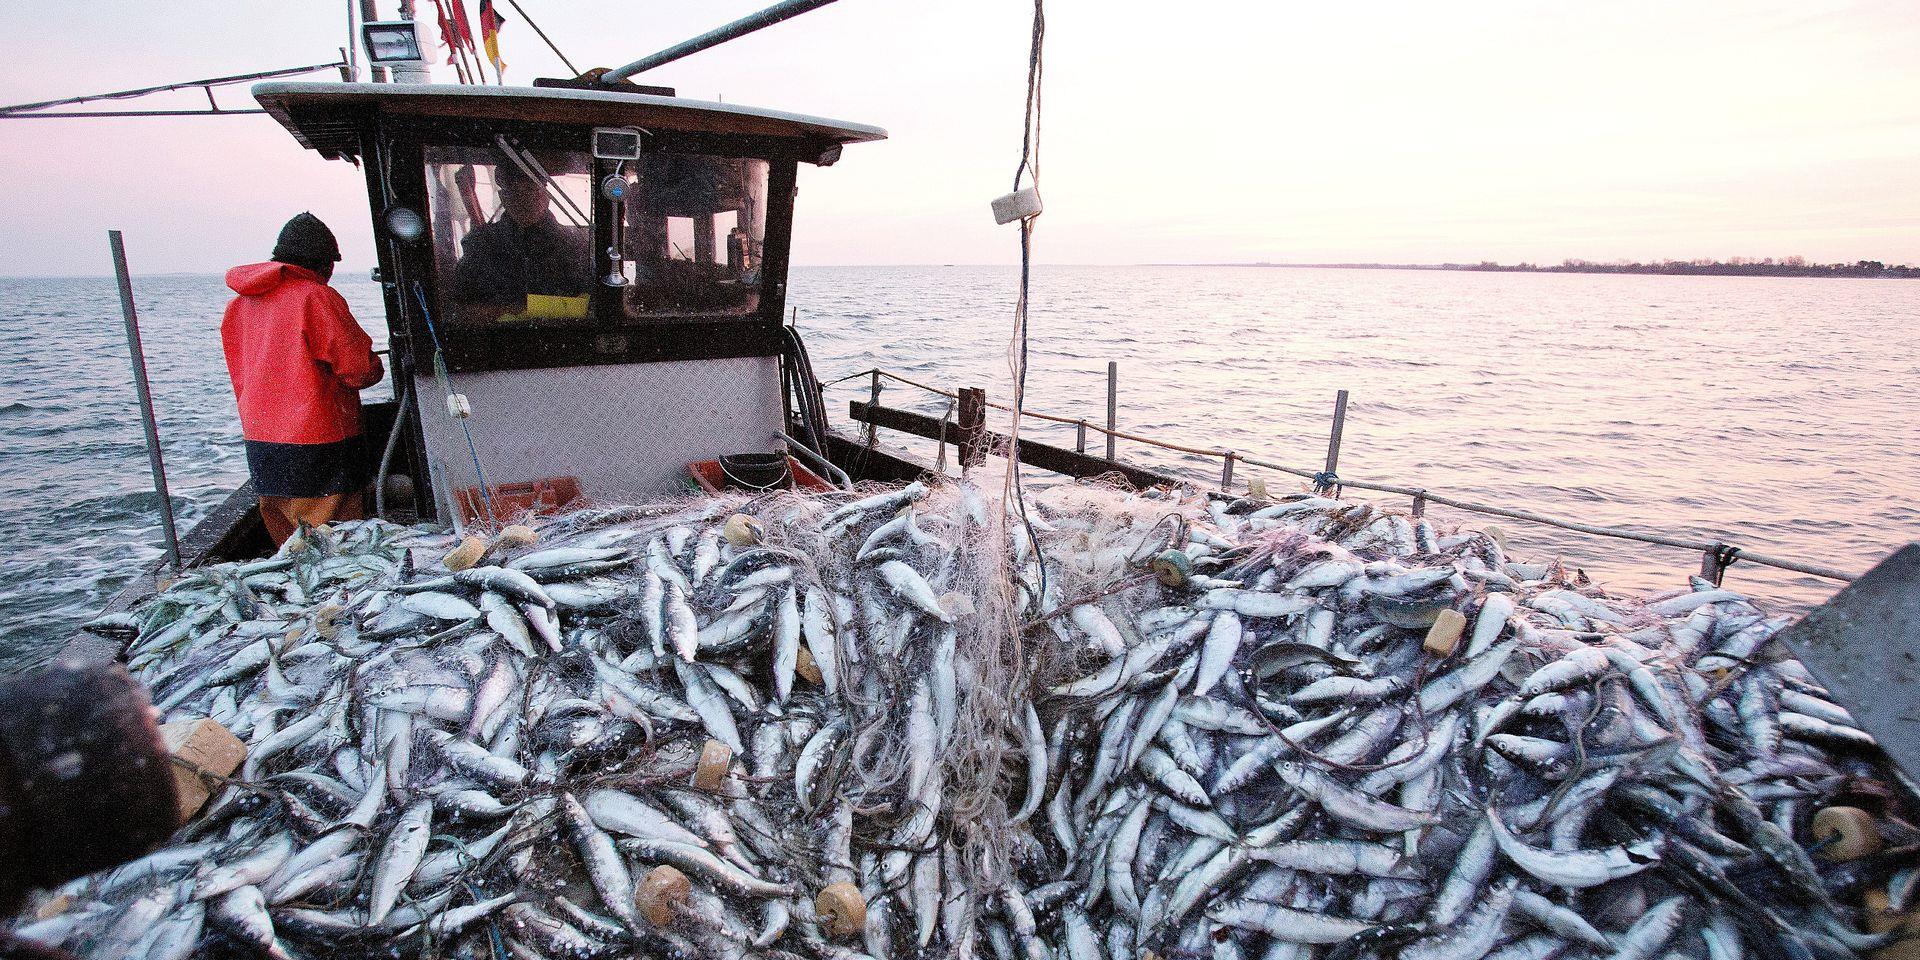 اتفاقية الصيد البحري.. المغرب ينفتح على شراكات جديدة تحترم السيادة الكاملة لبعضها البعض